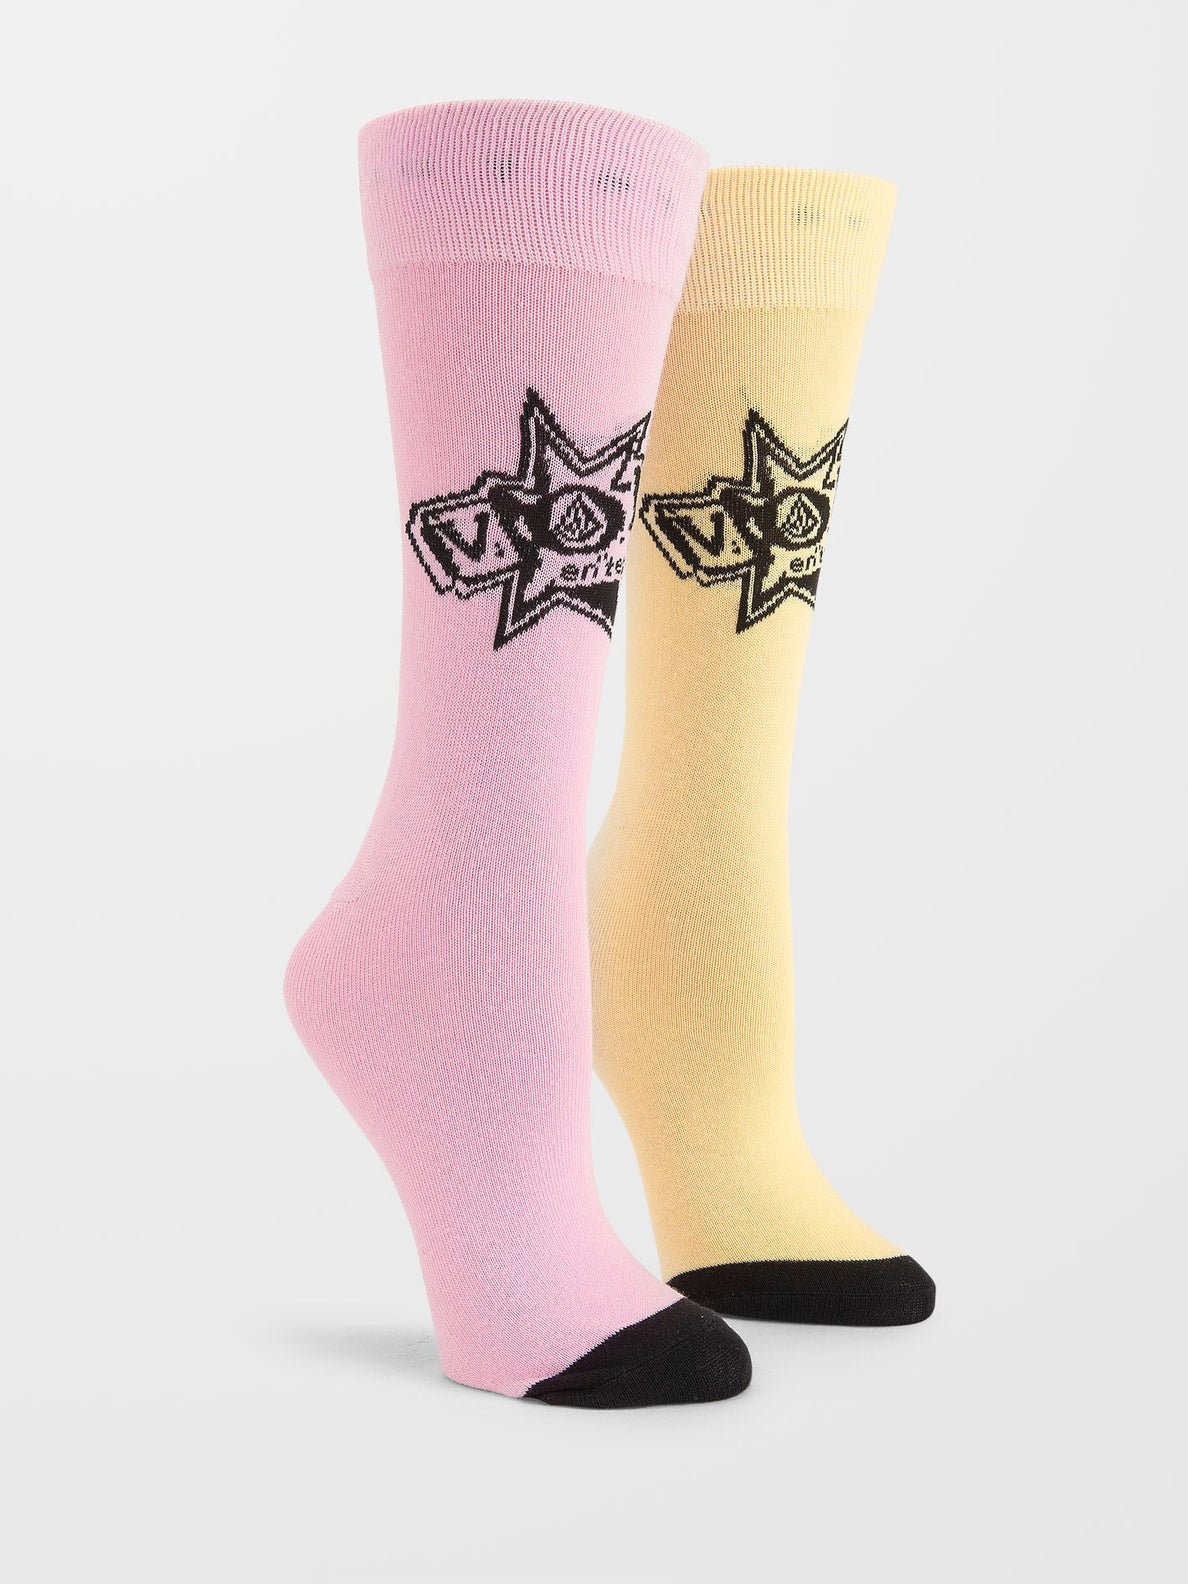 Calcetin Chica Volcom V Ent Sock Premium Reef Pink | surfdevils.com